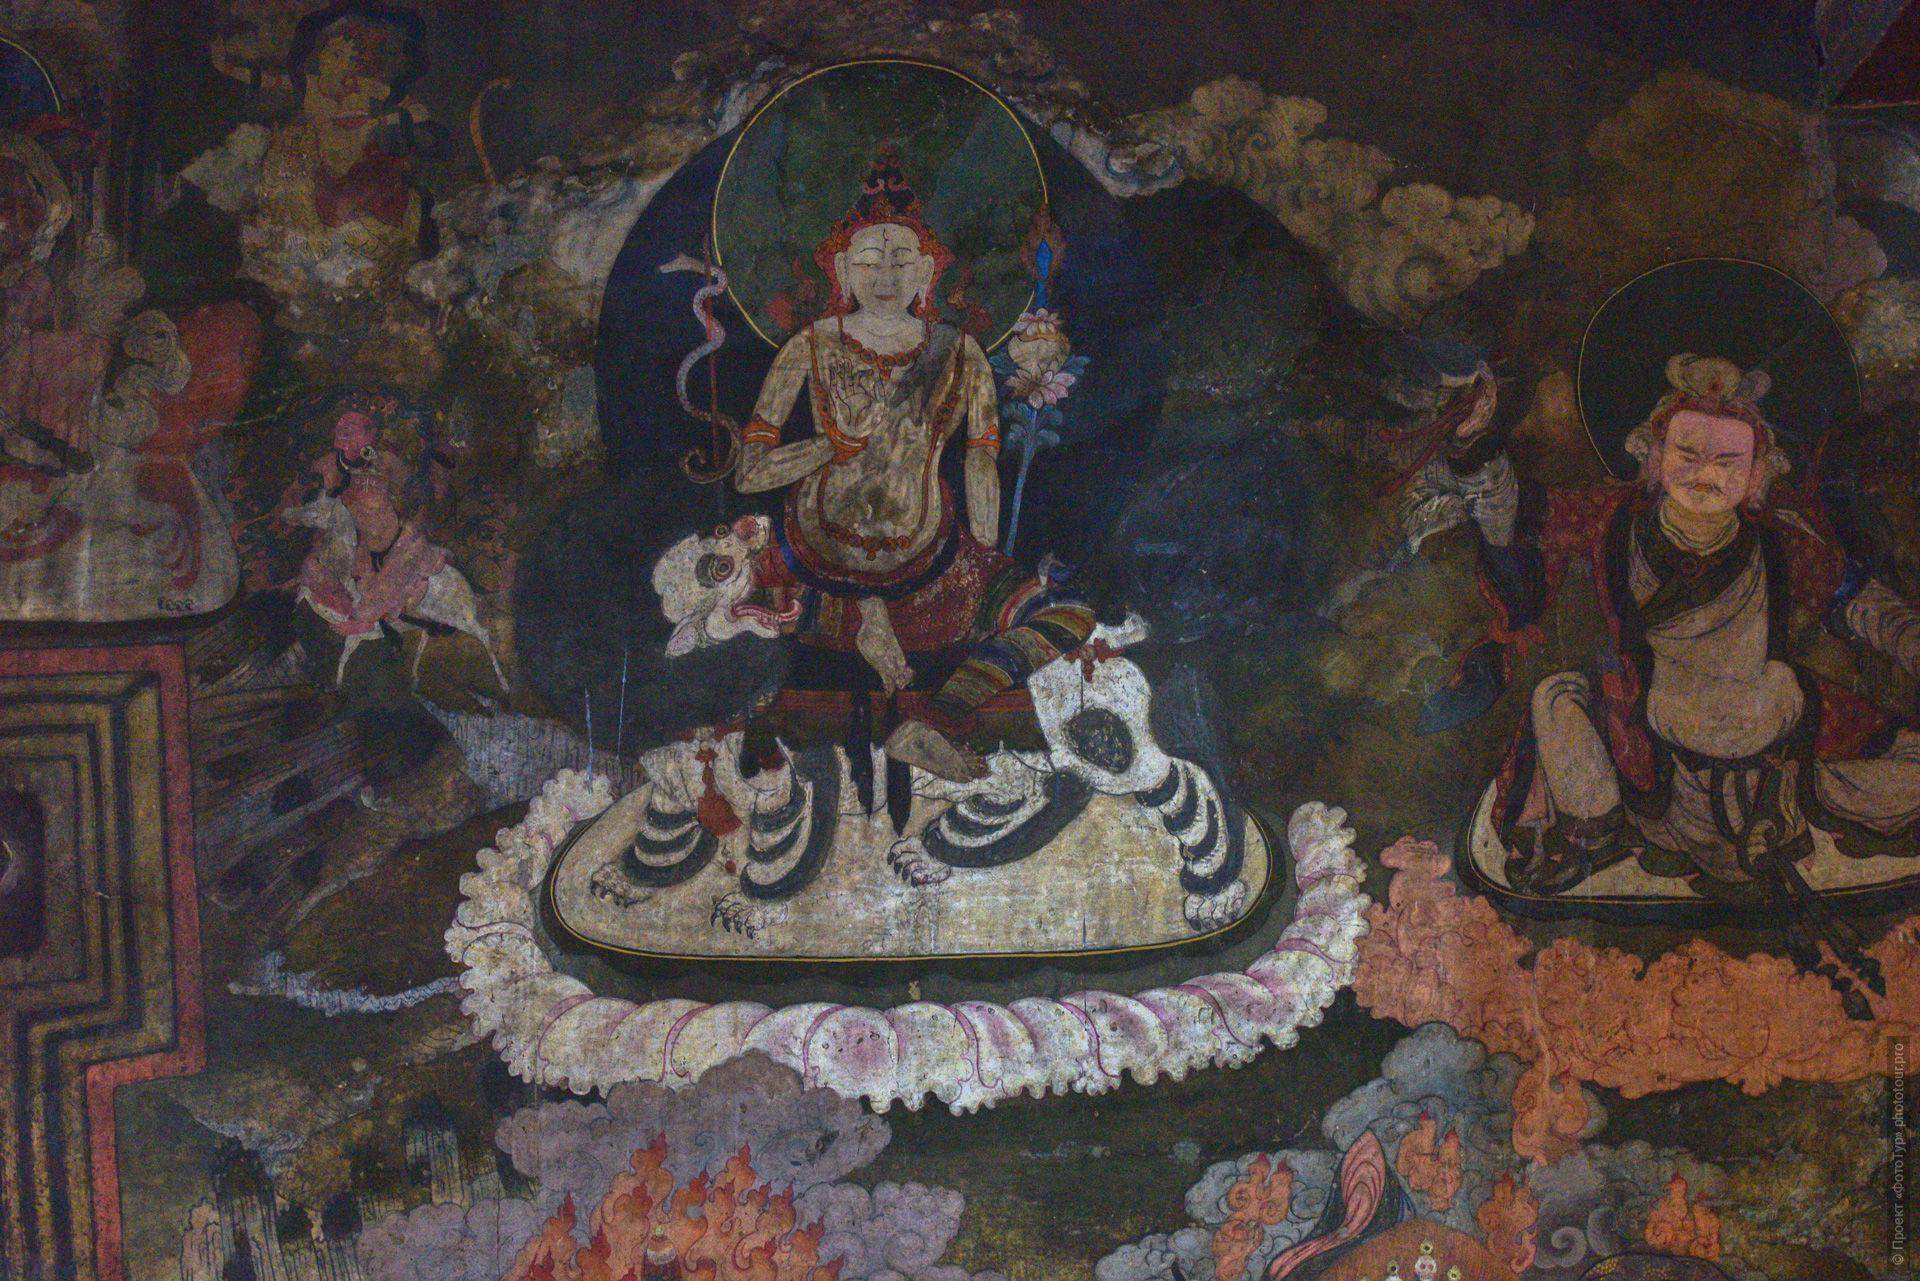 Росписи стен, буддийский монастырь Чамдей Гонпа, Ладакх, северная Индия.